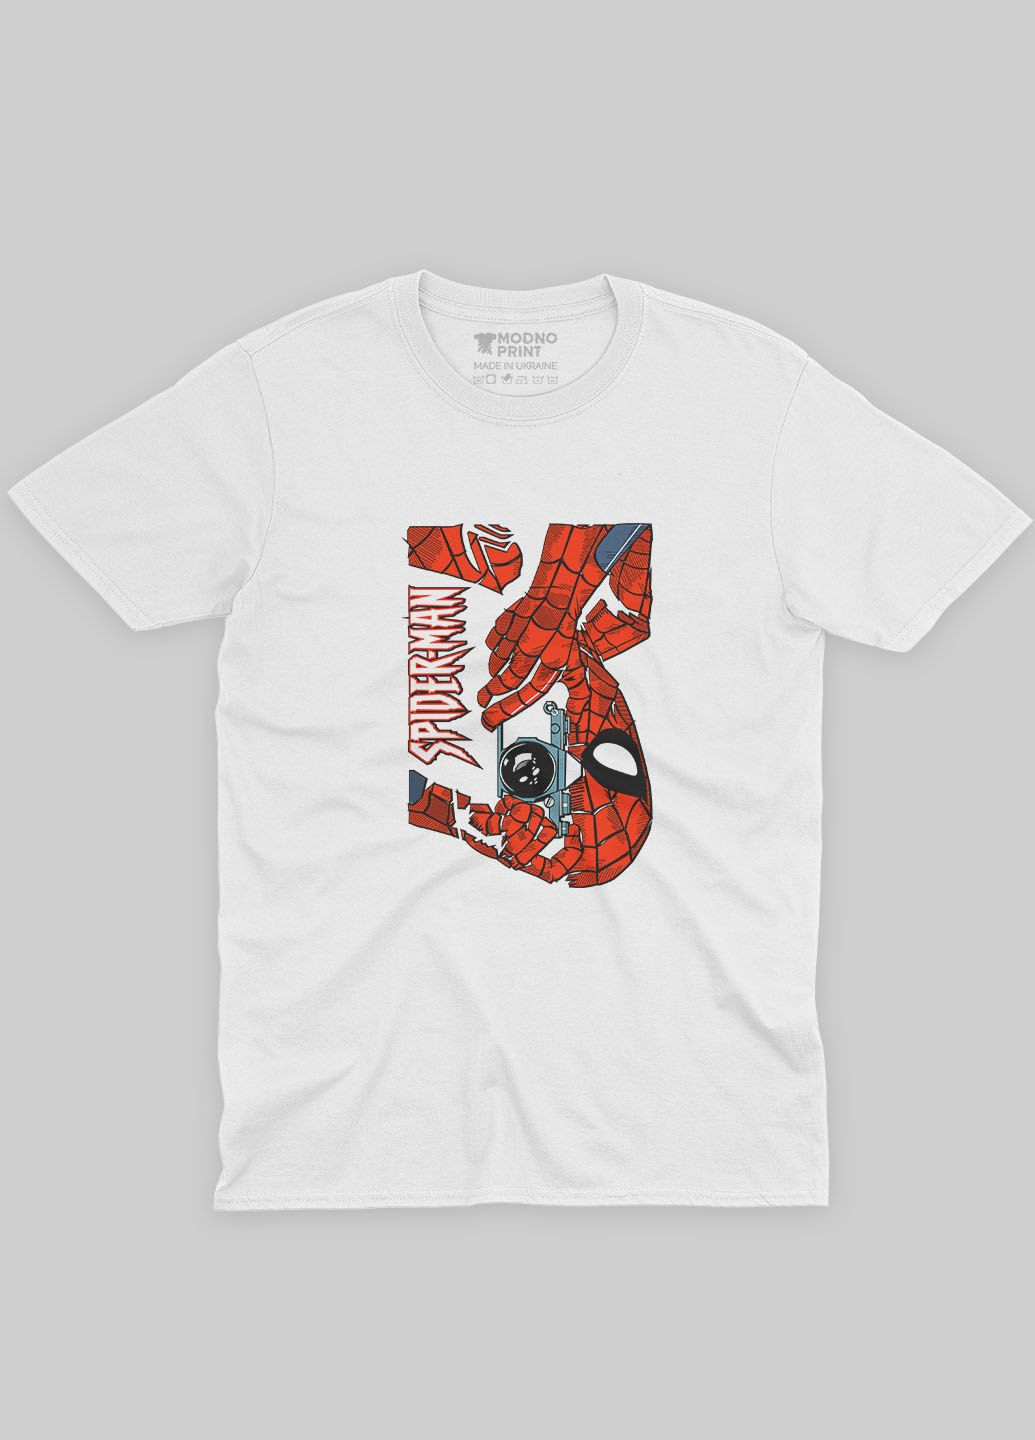 Белая демисезонная футболка для мальчика с принтом супергероя - человек-паук (ts001-1-whi-006-014-042-b) Modno